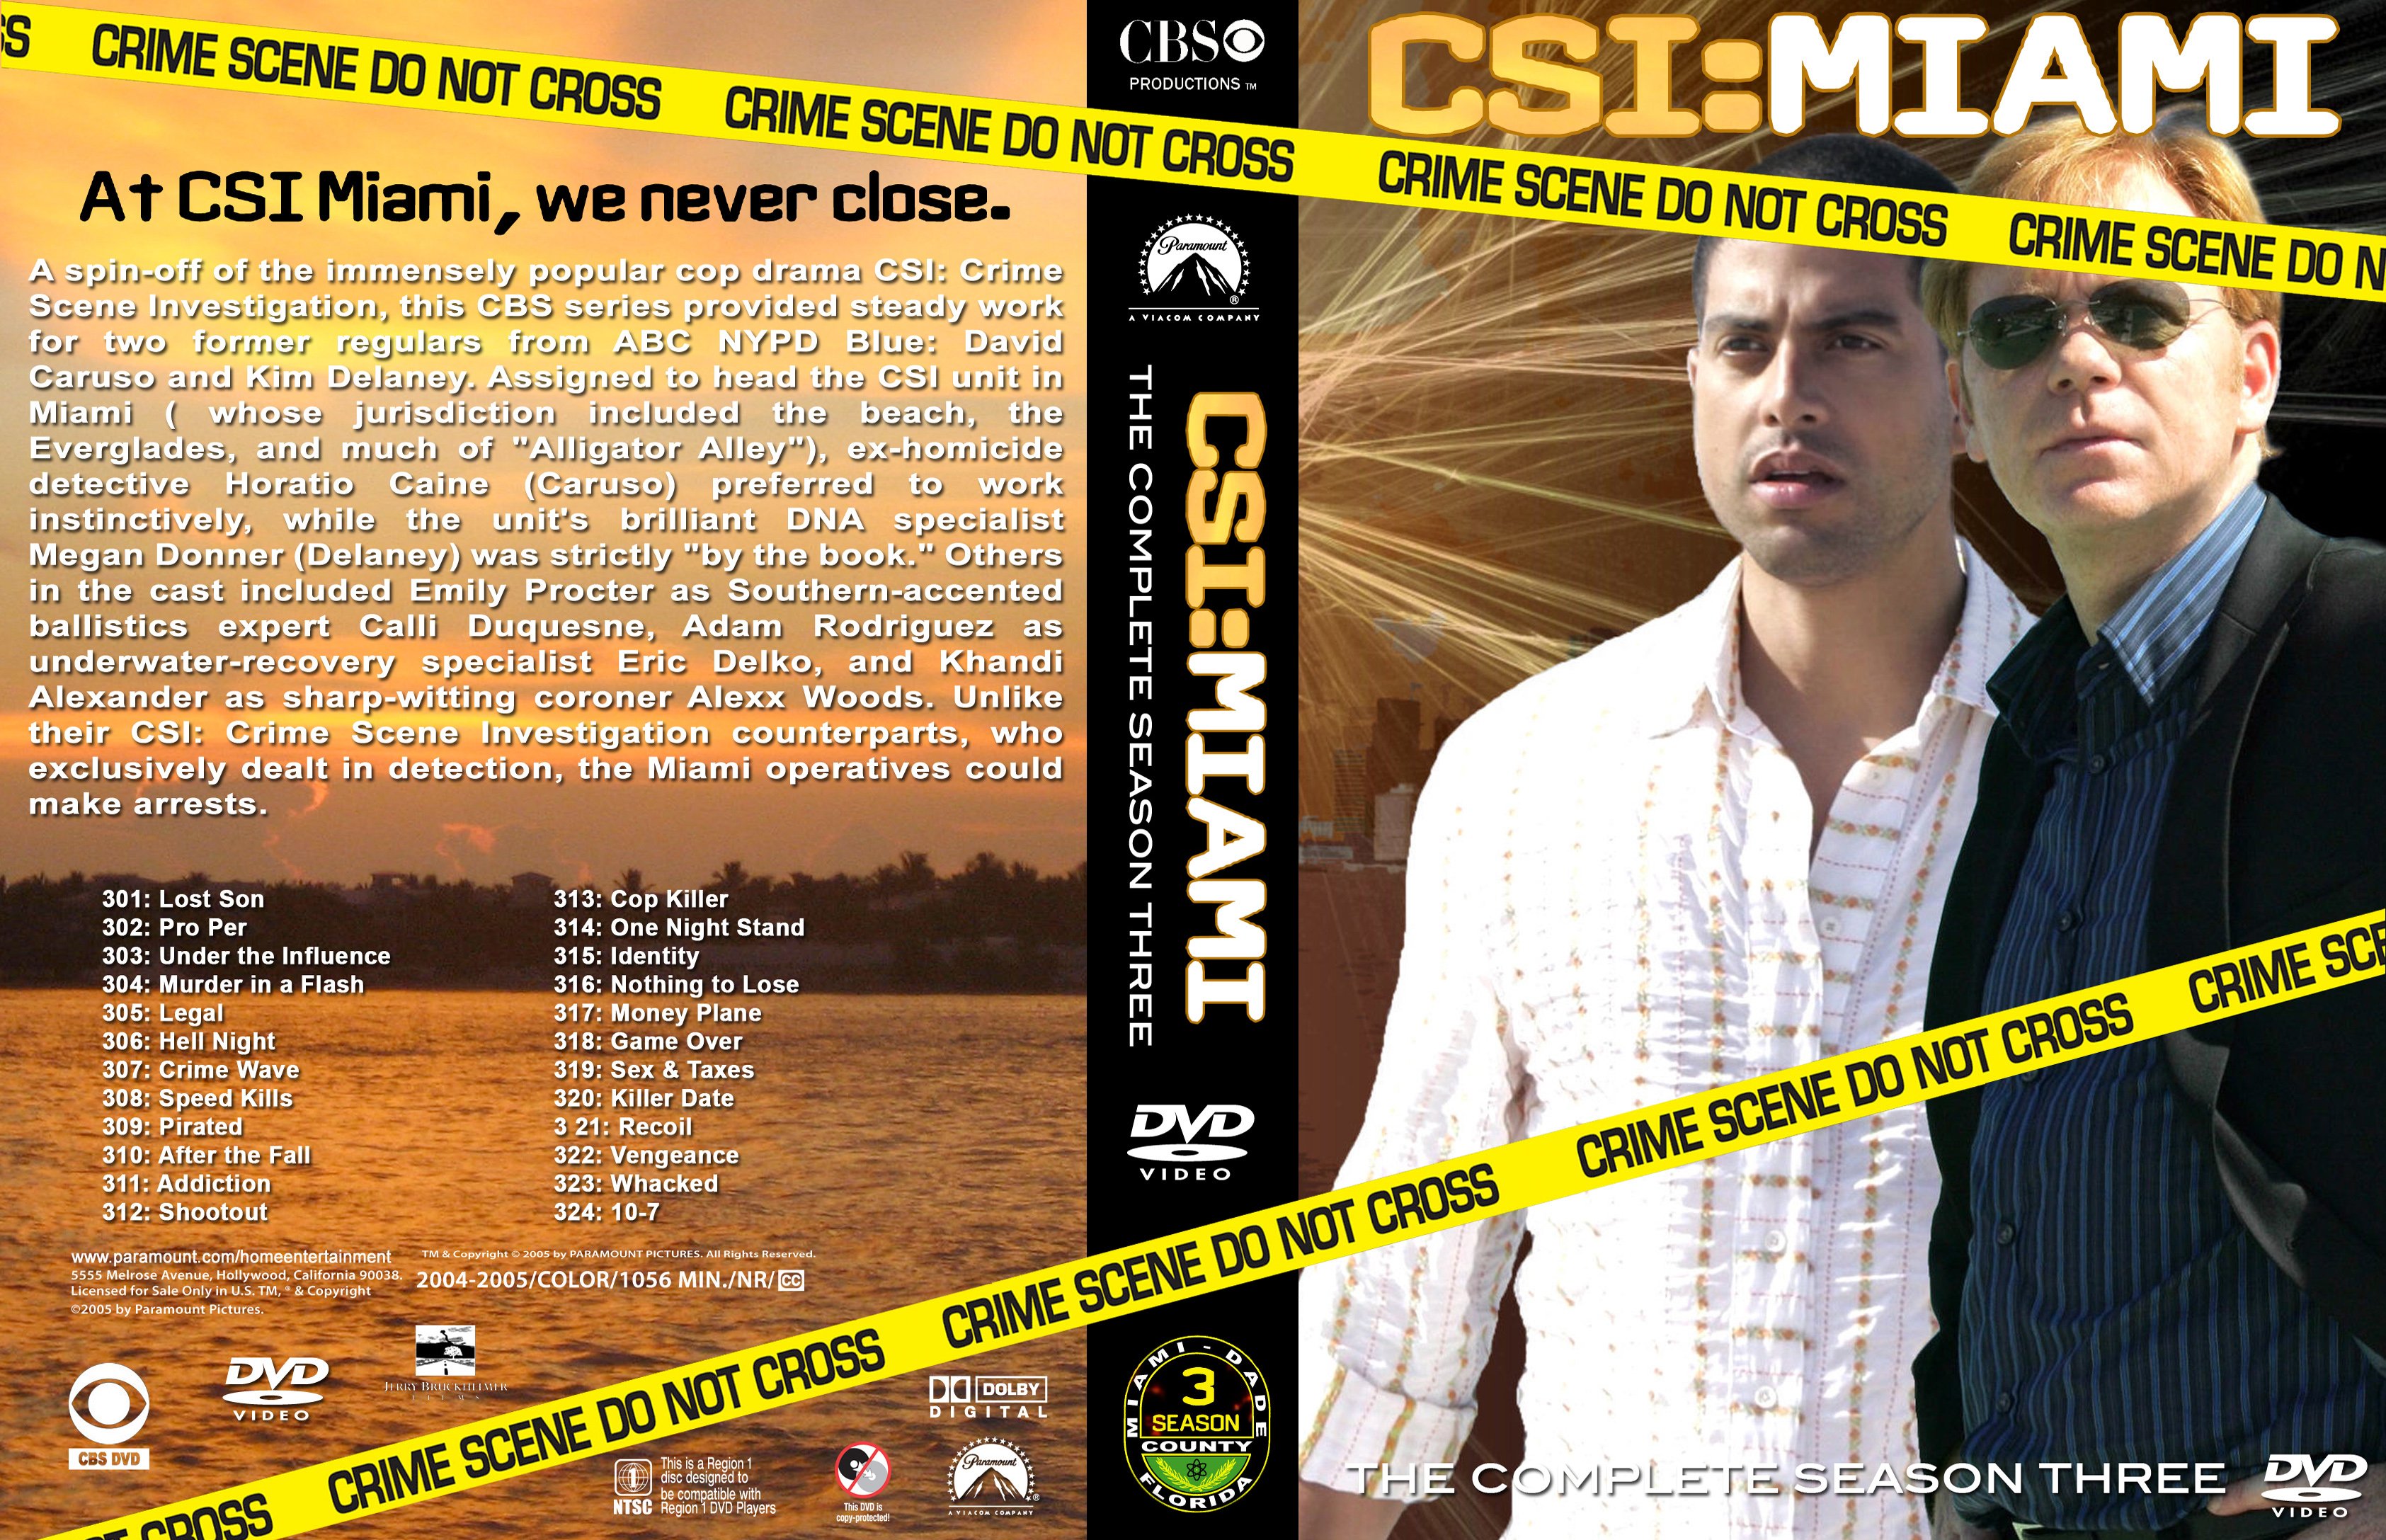 csi, Crime, Drama, Series, Mystery, Scene, Investigation Wallpaper